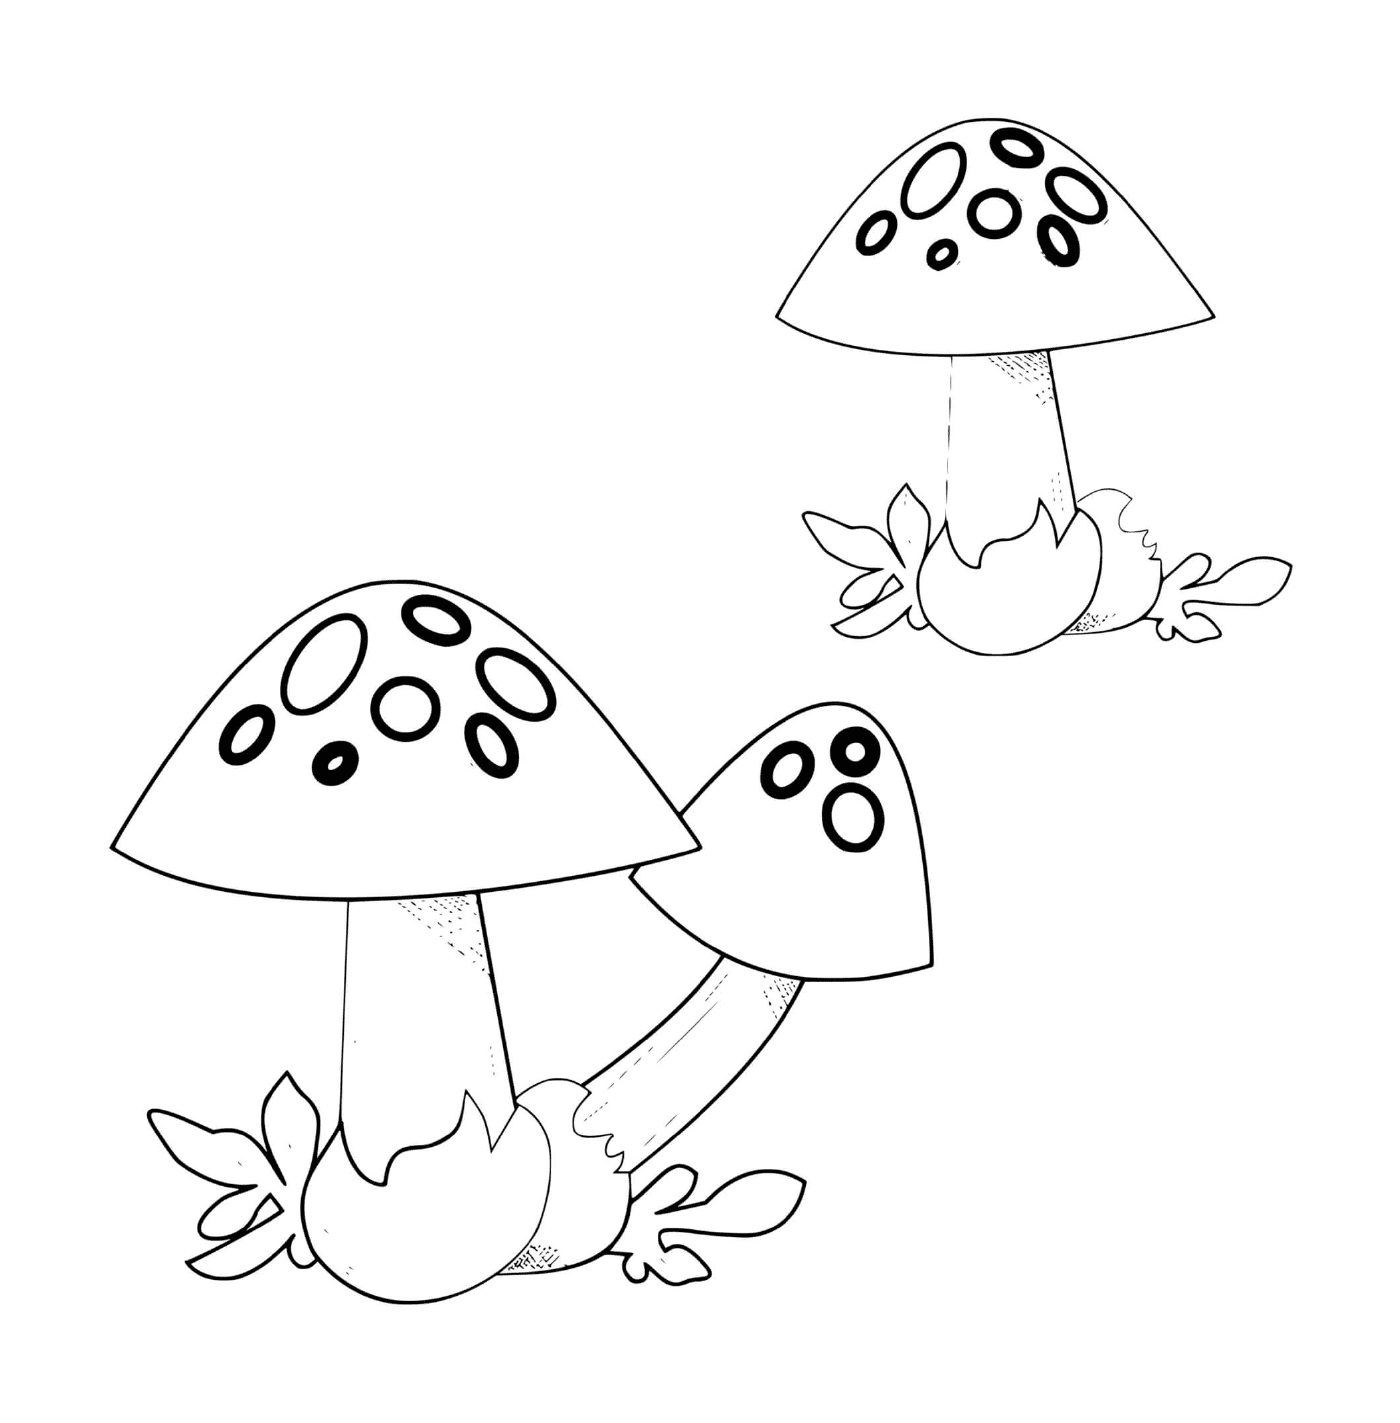  两个蒸气蘑菇并排 